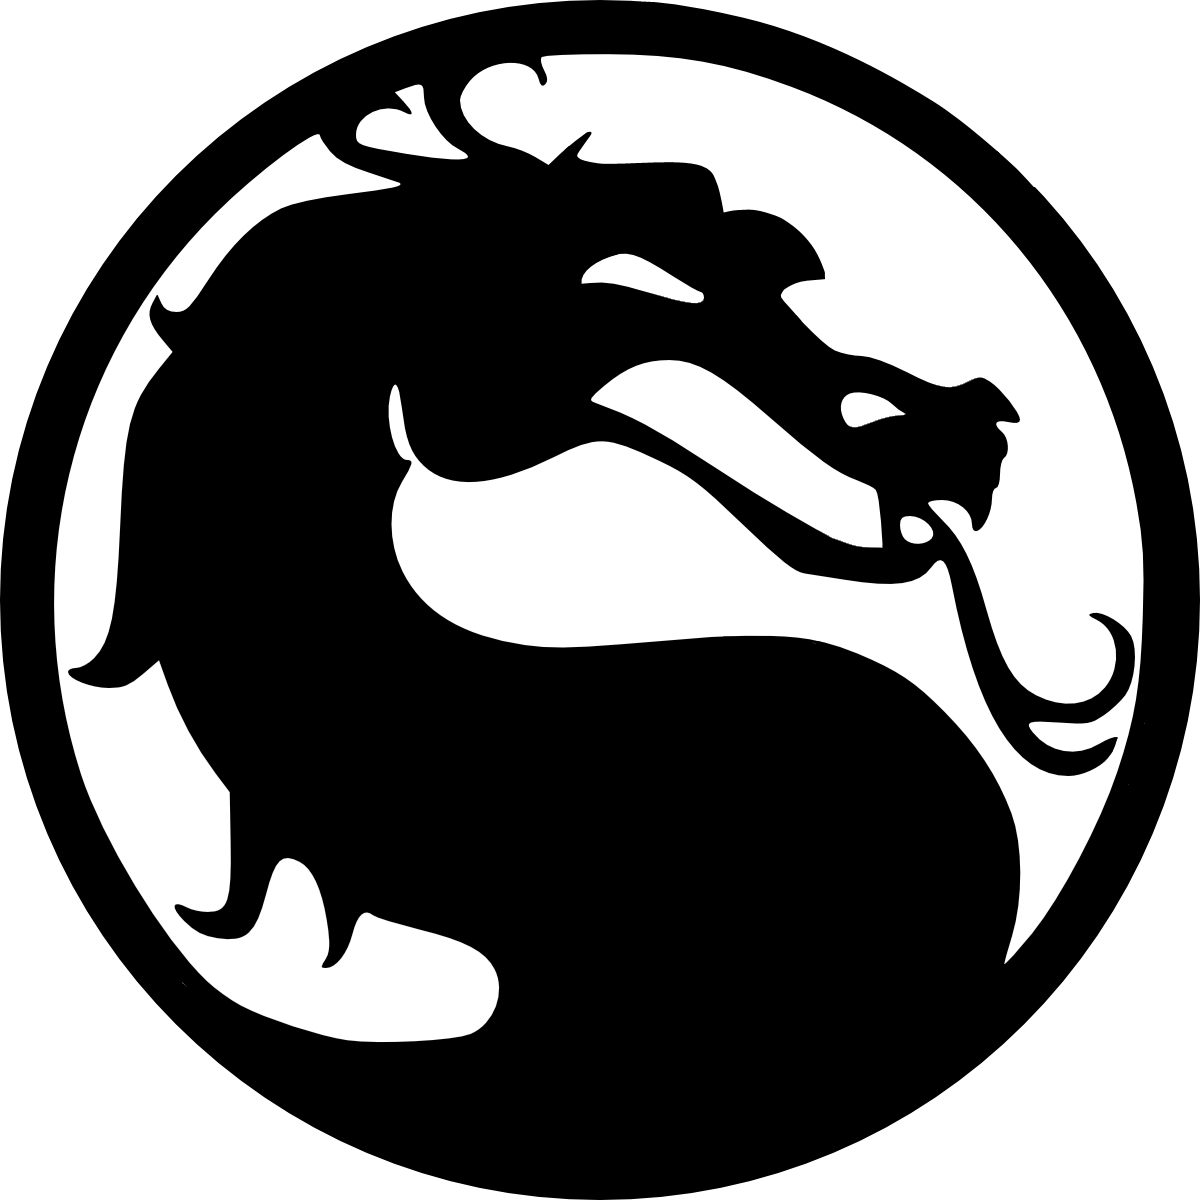 Mortal Kombat Silhouette - Mortal Kombat Logo Png (1200x1200)